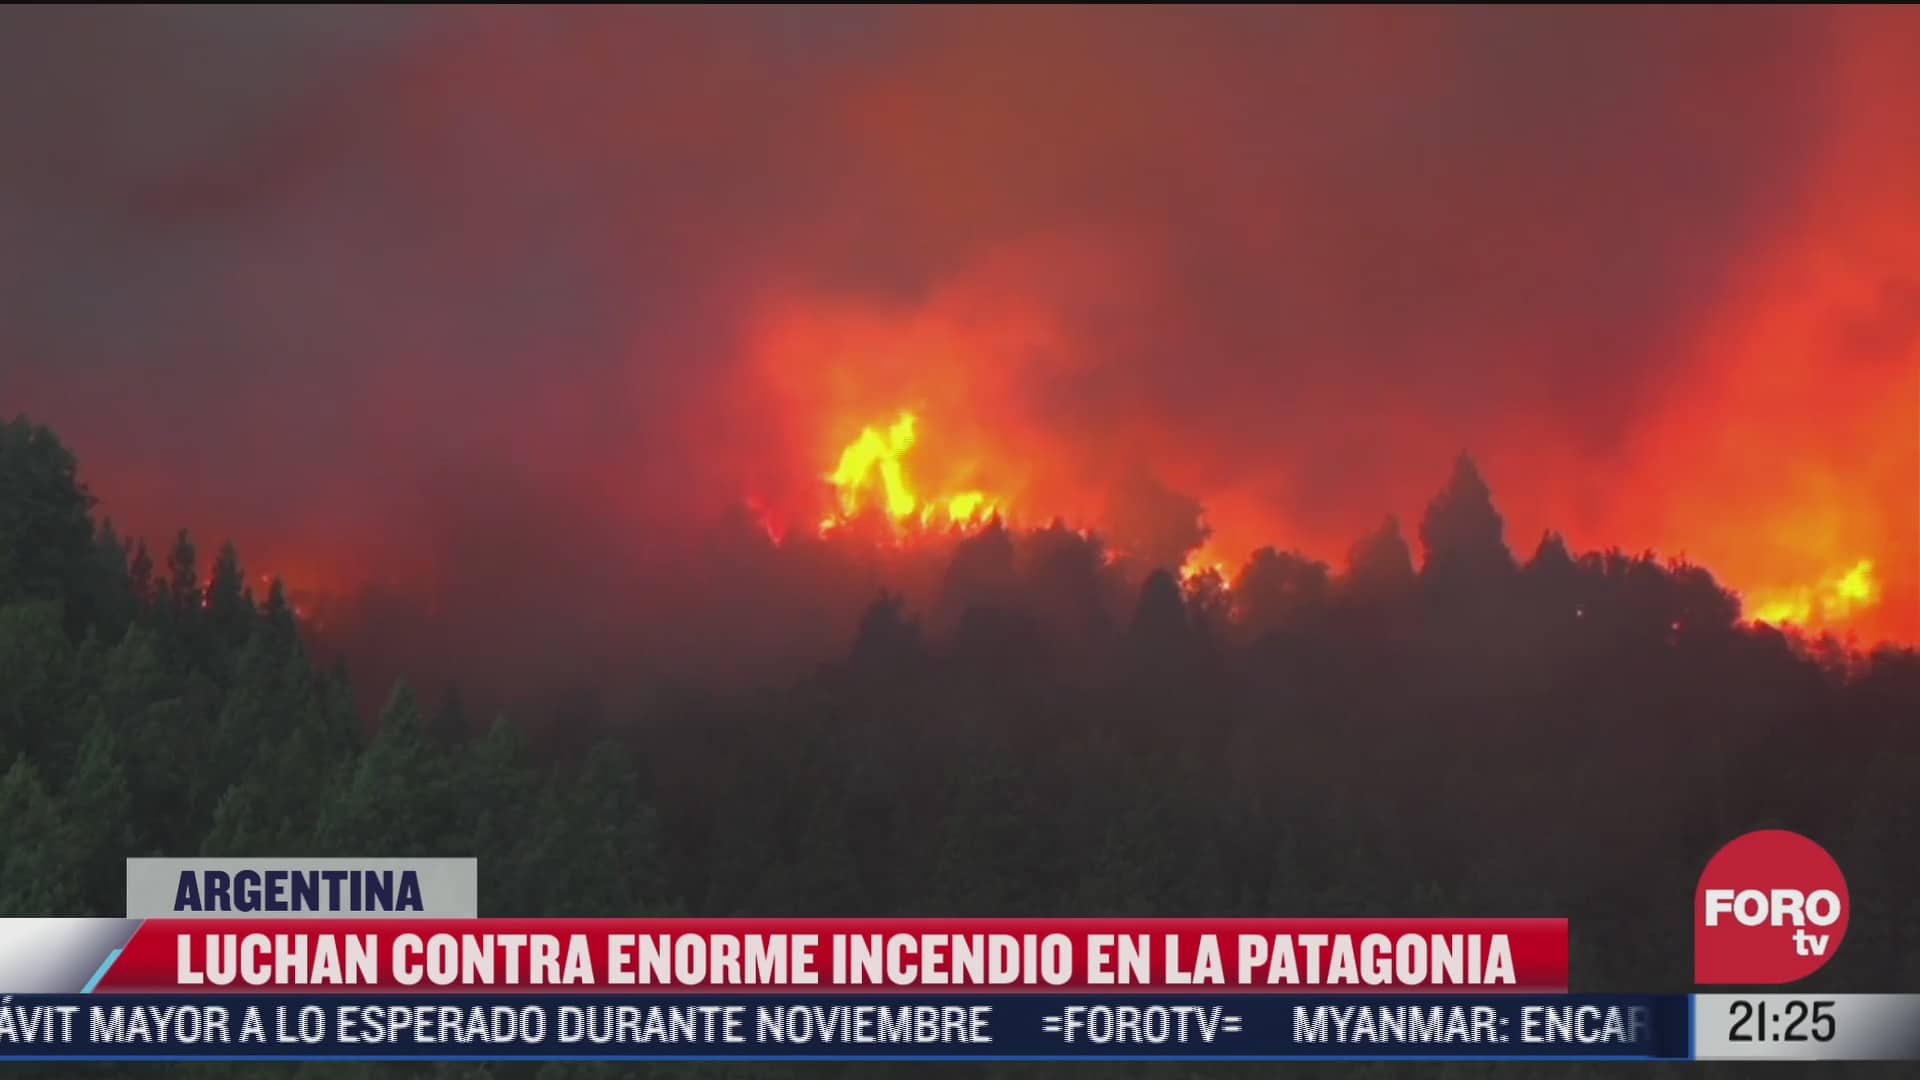 luchan contra enorme incendio en la patagonia en argentina